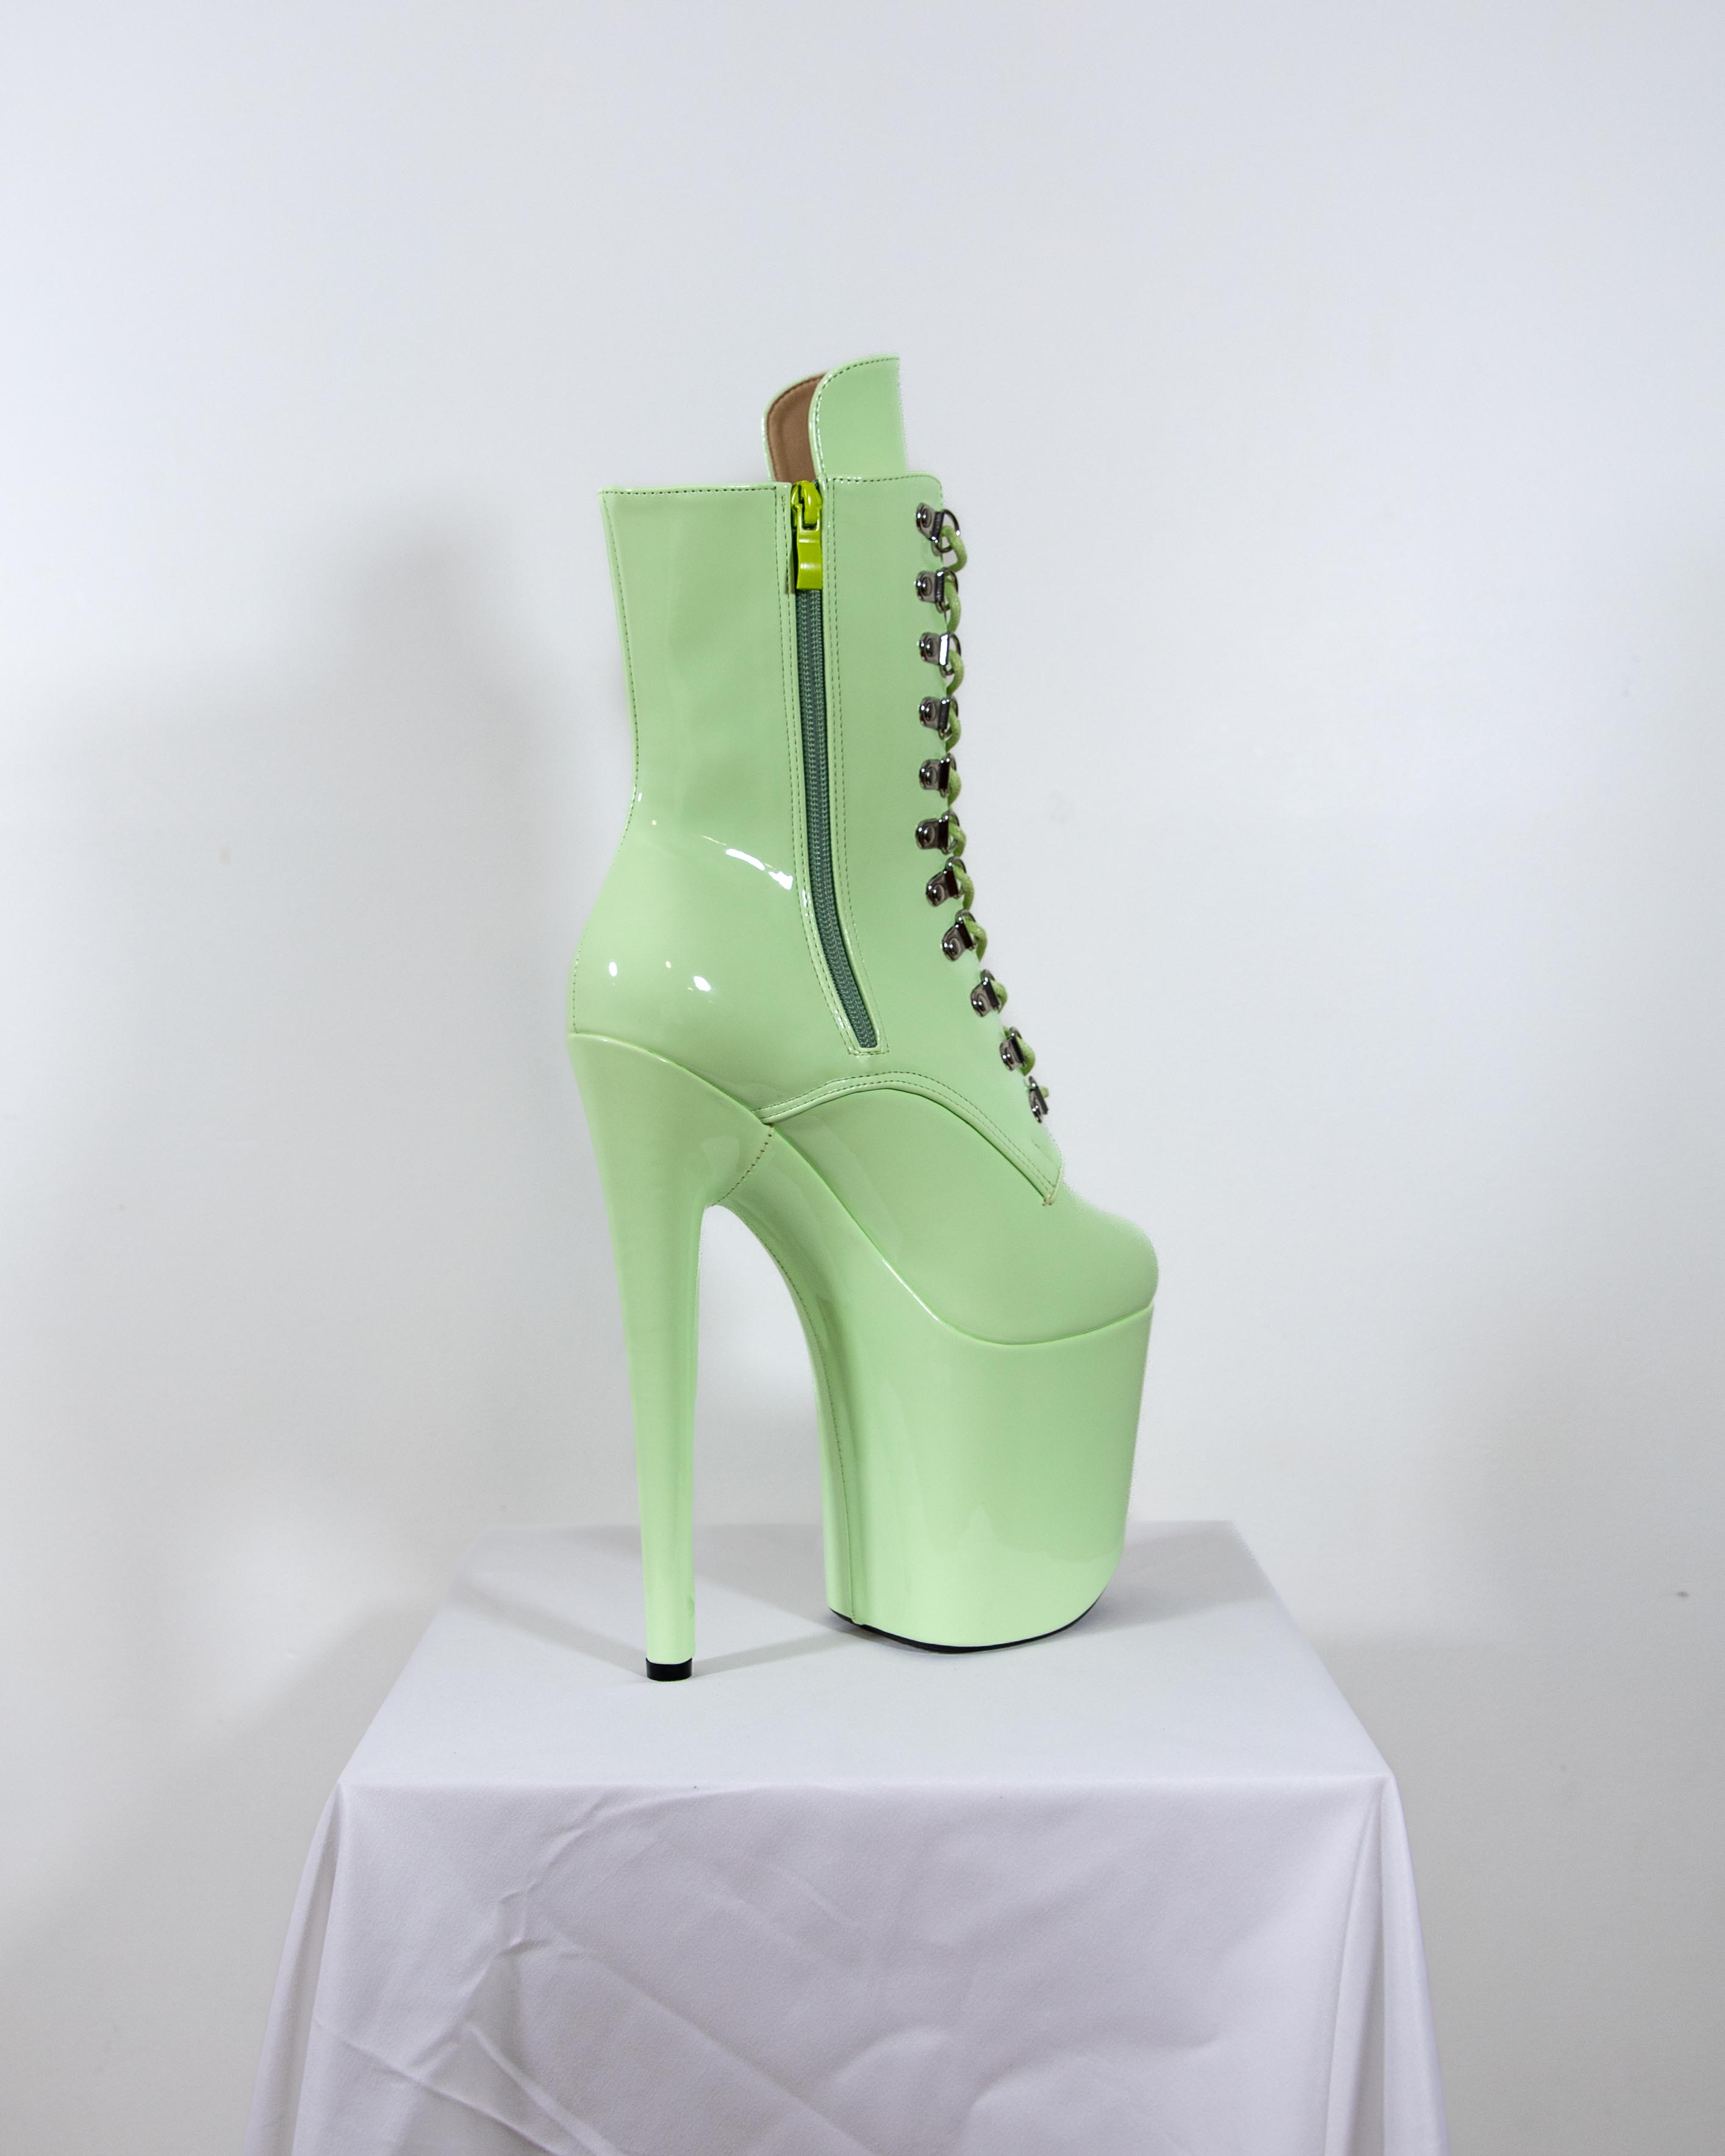 Balenciaga Crocs 2.0 Spring 2022 Collaboration Photos | POPSUGAR Fashion